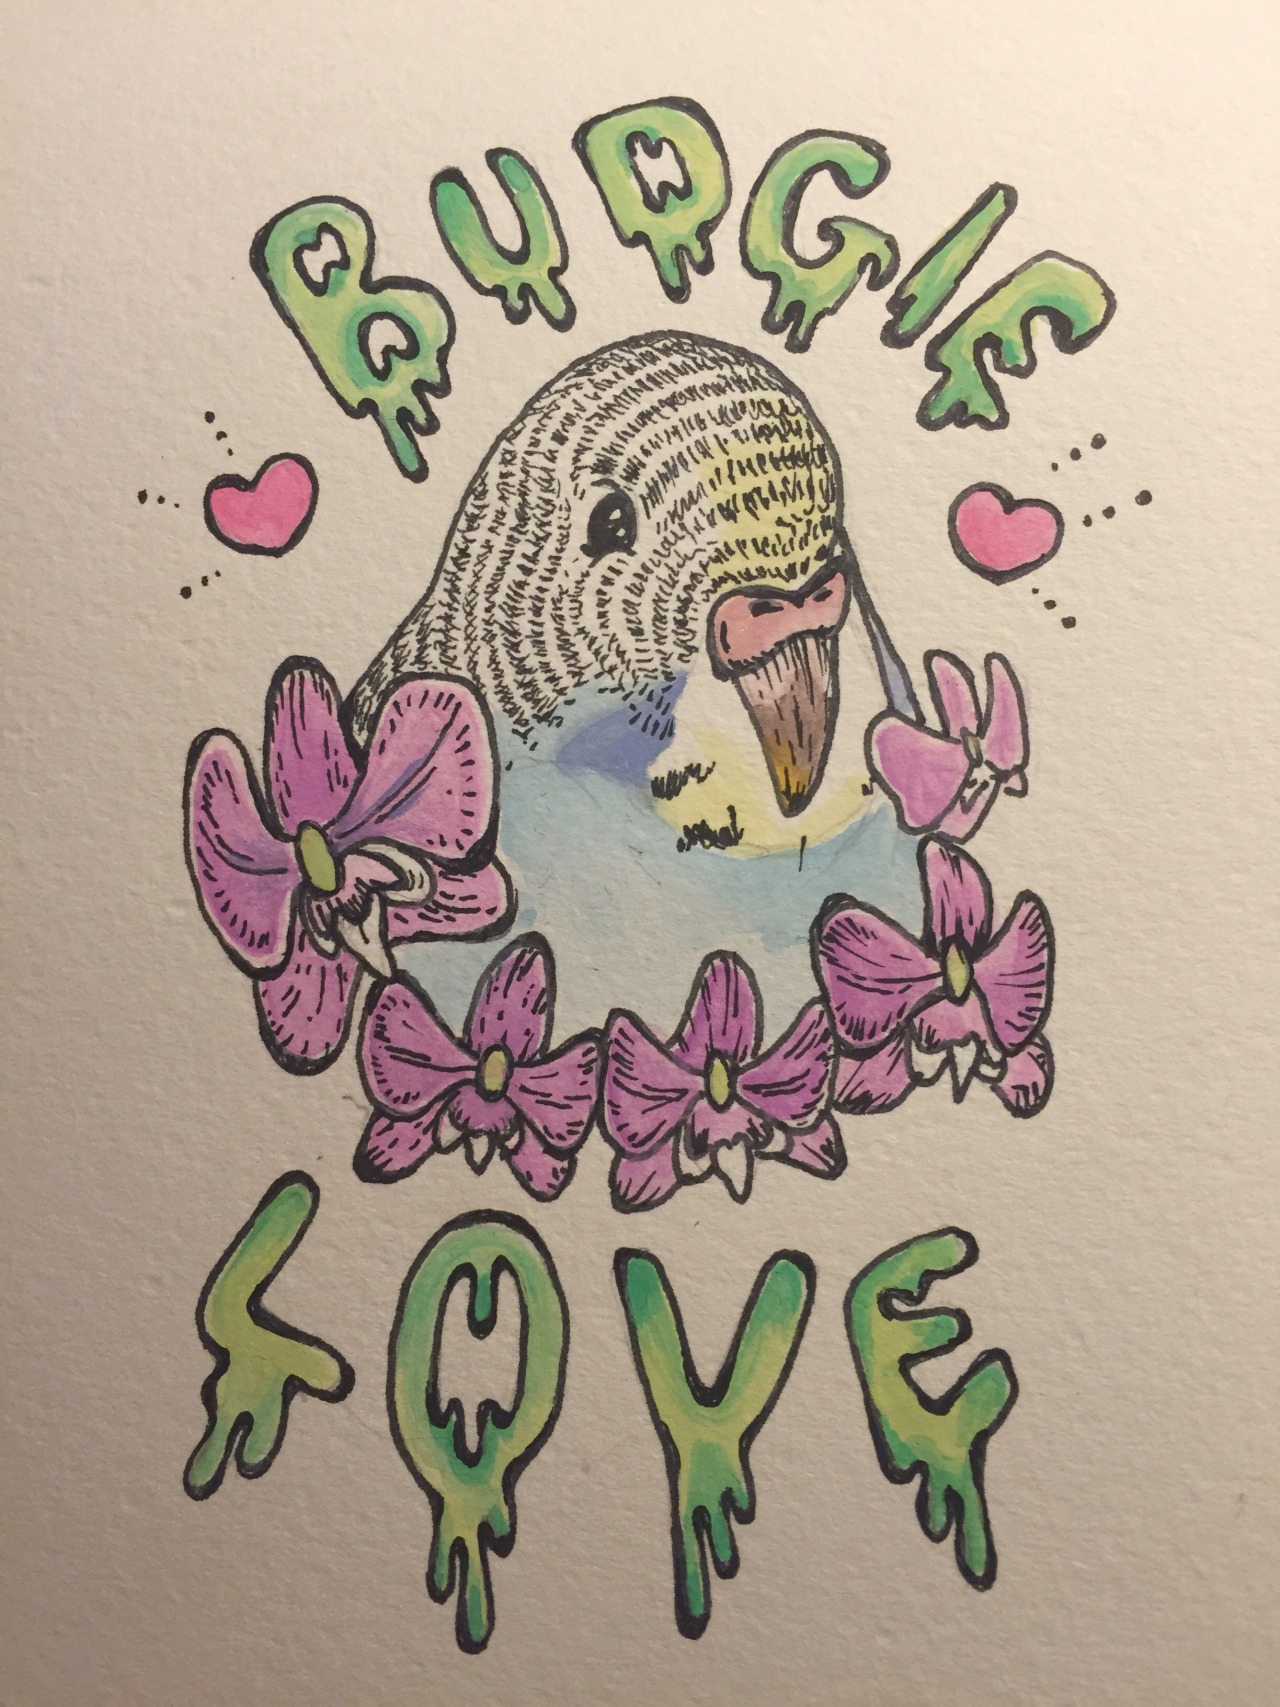 Love is for the Birds http://girl-voyeur.tumblr.com/